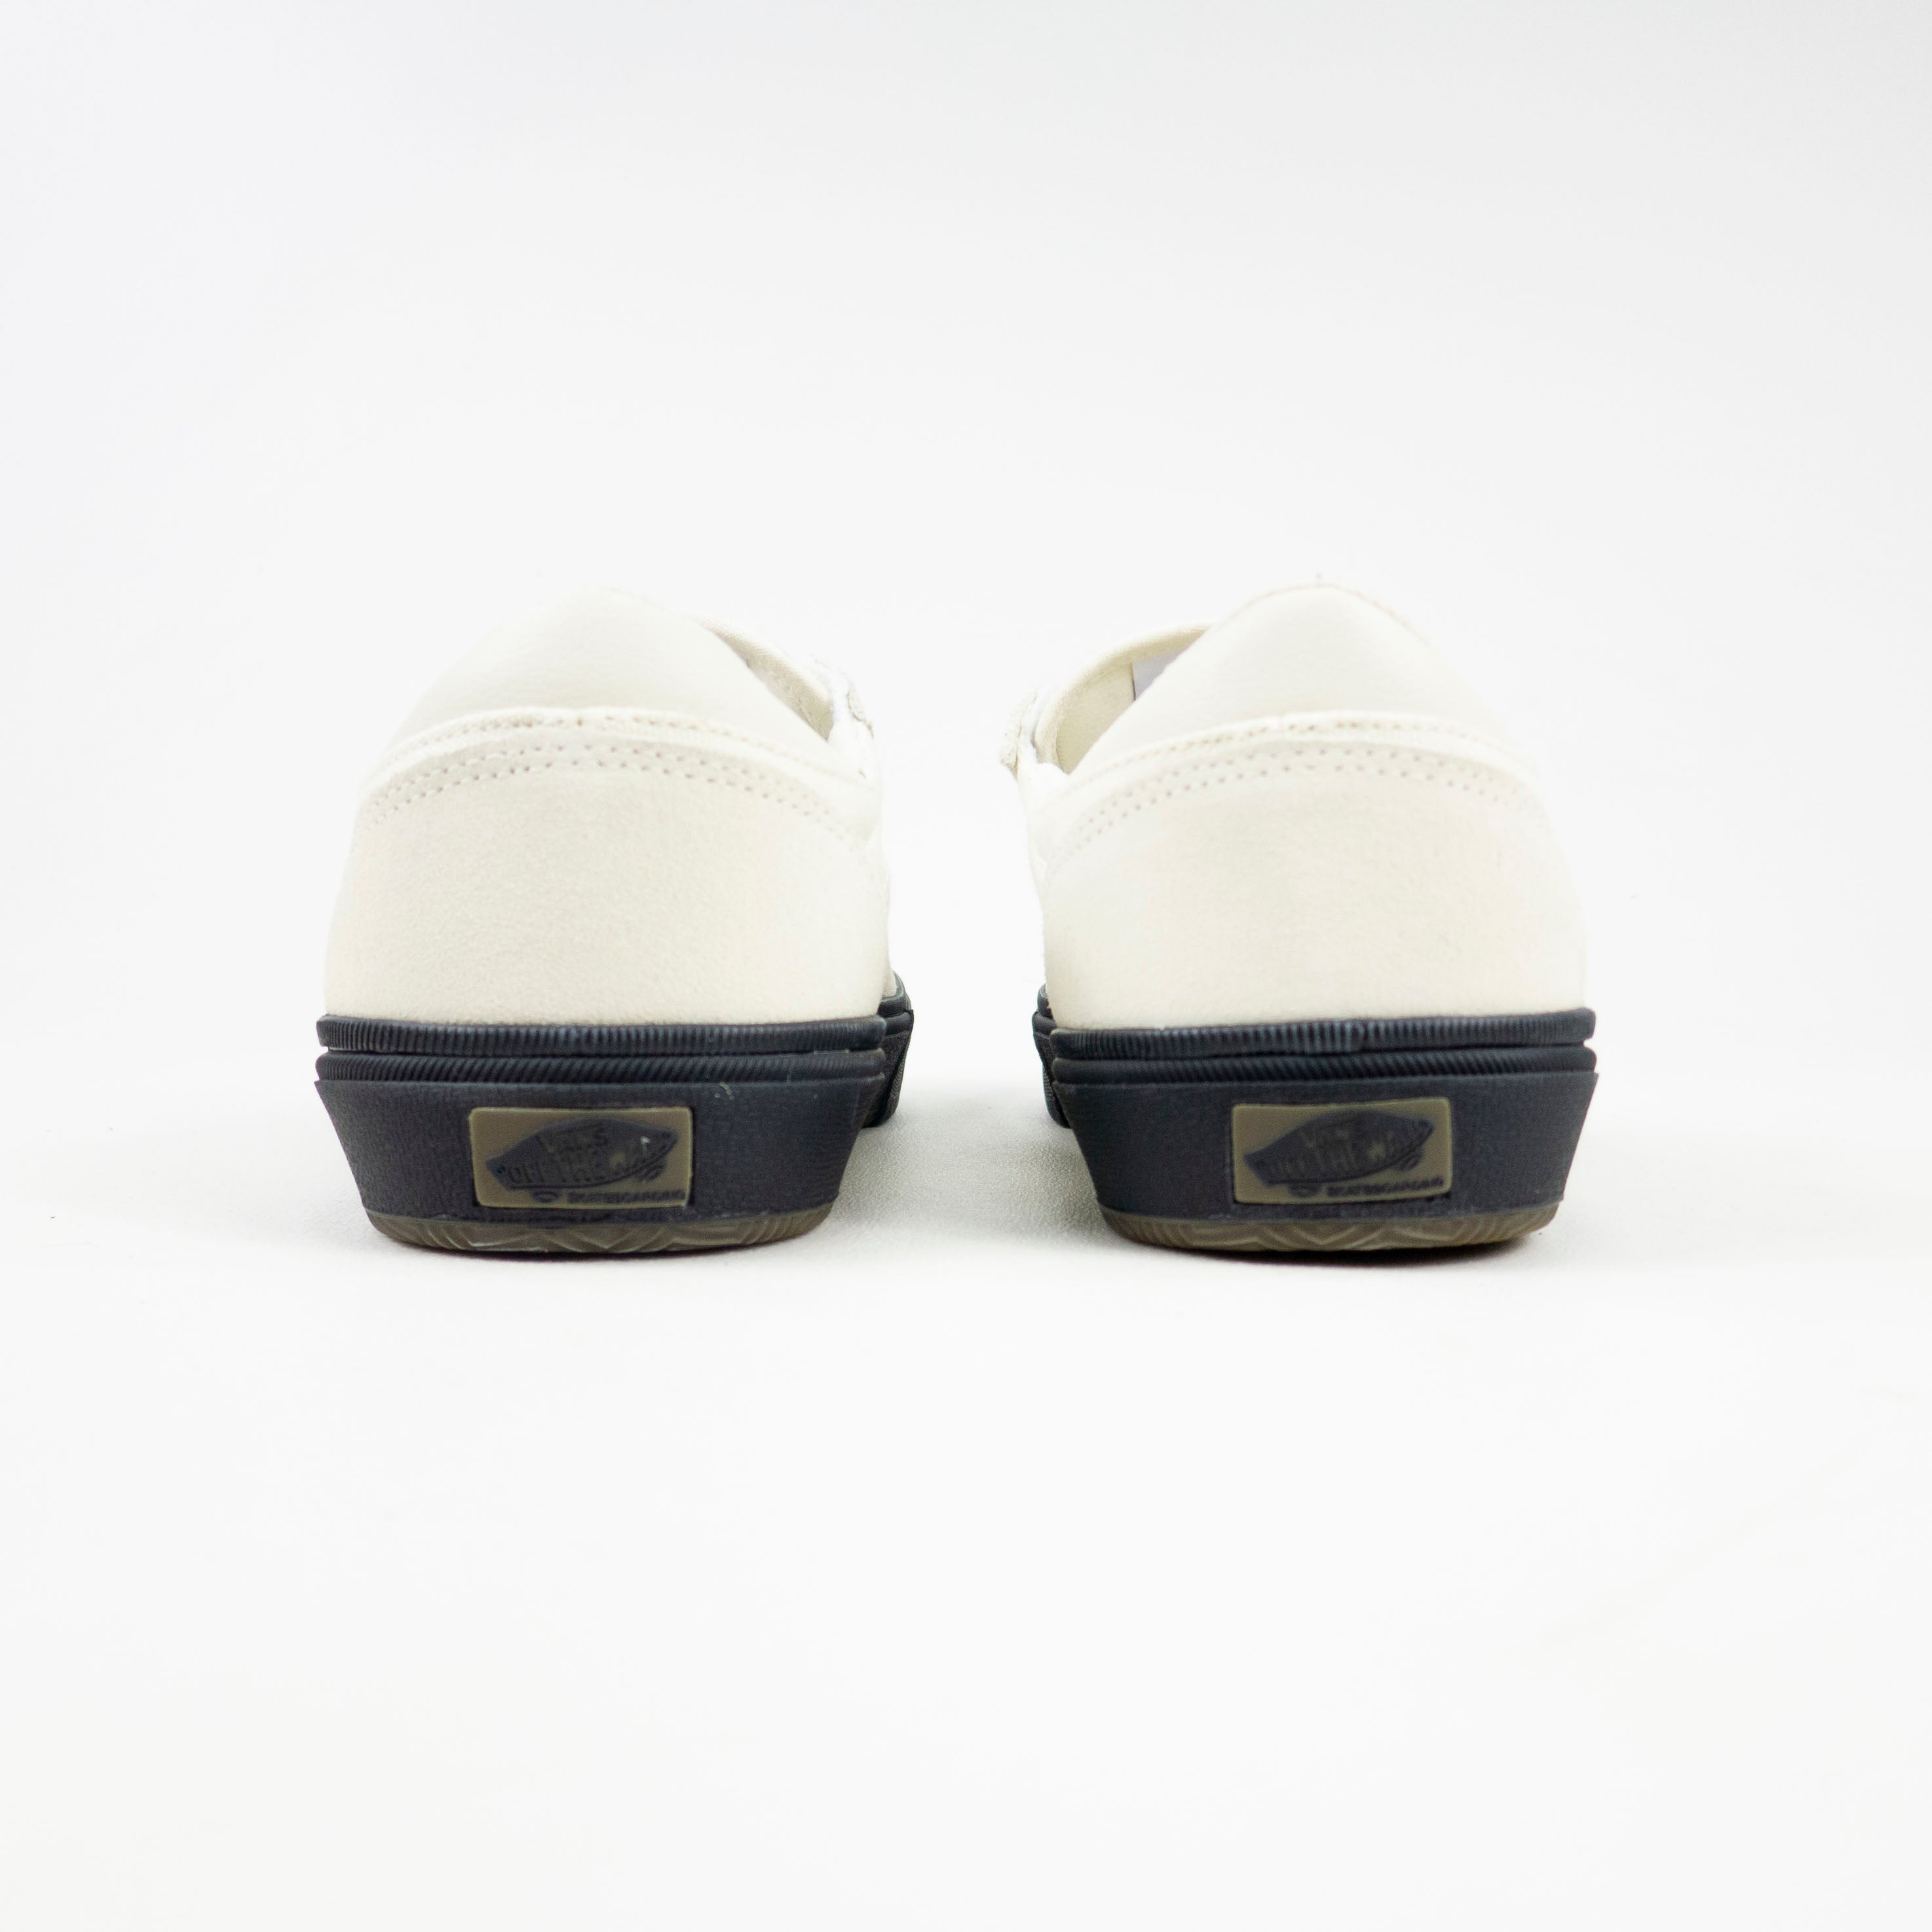 Vans Gilbert Crockett Skate Shoes - (Crockett) Antique White/Black ...